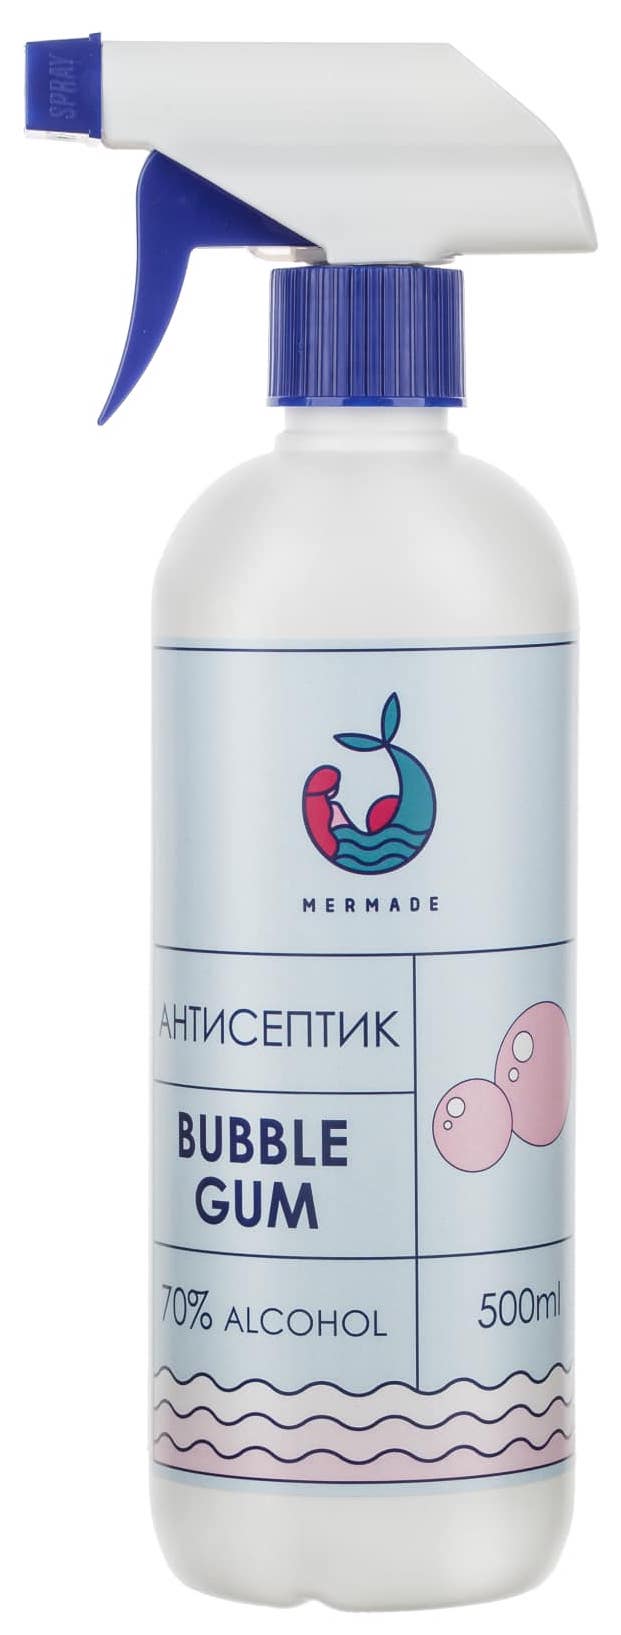 Антисептик MERMADE Bubble Gum (Жевательная резинка) 500мл в Киеве